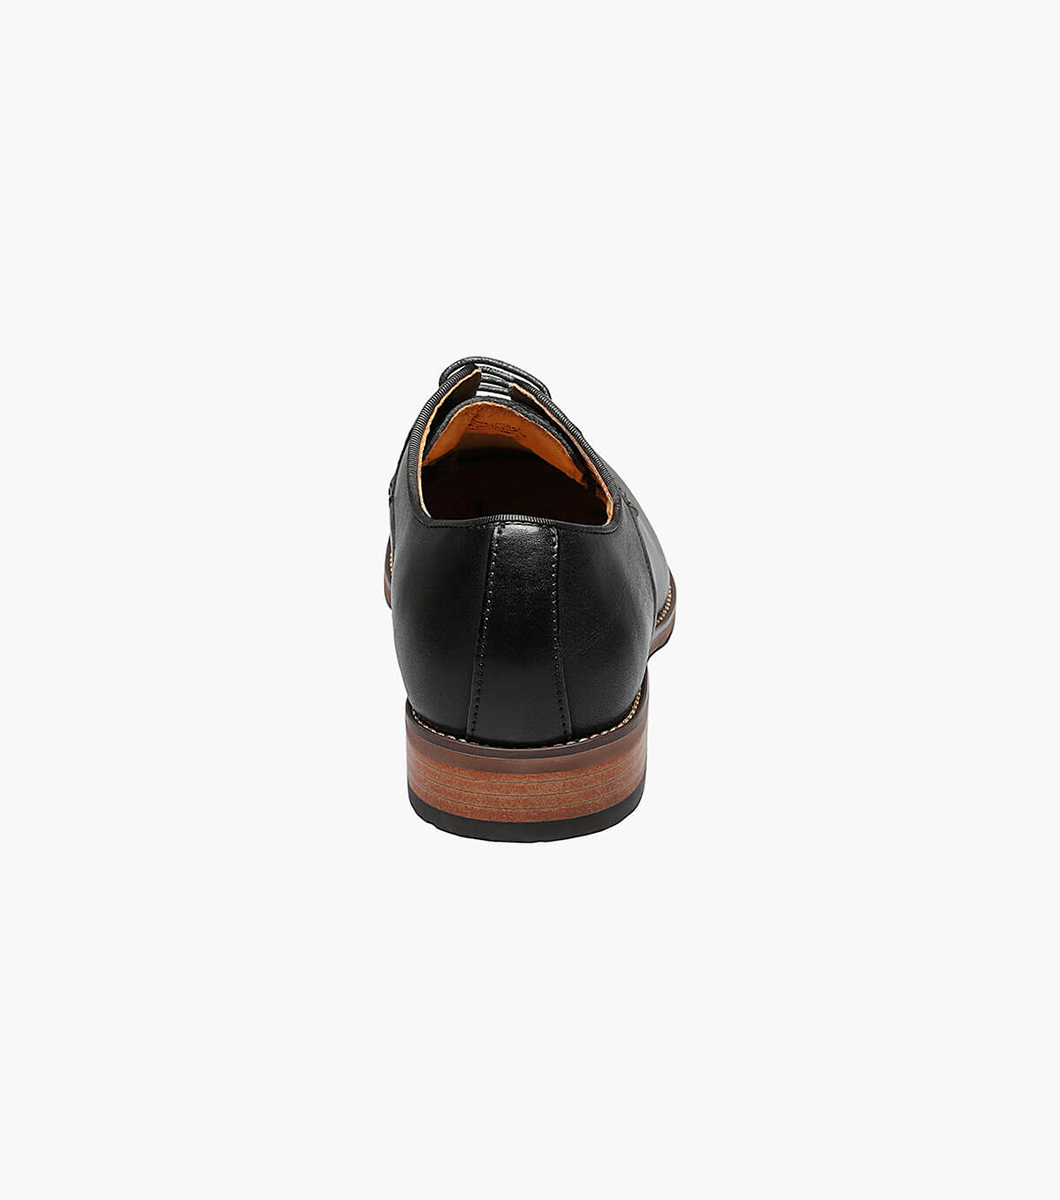 Blaze Plain Toe Oxford Men’s Dress Shoes | Florsheim.com